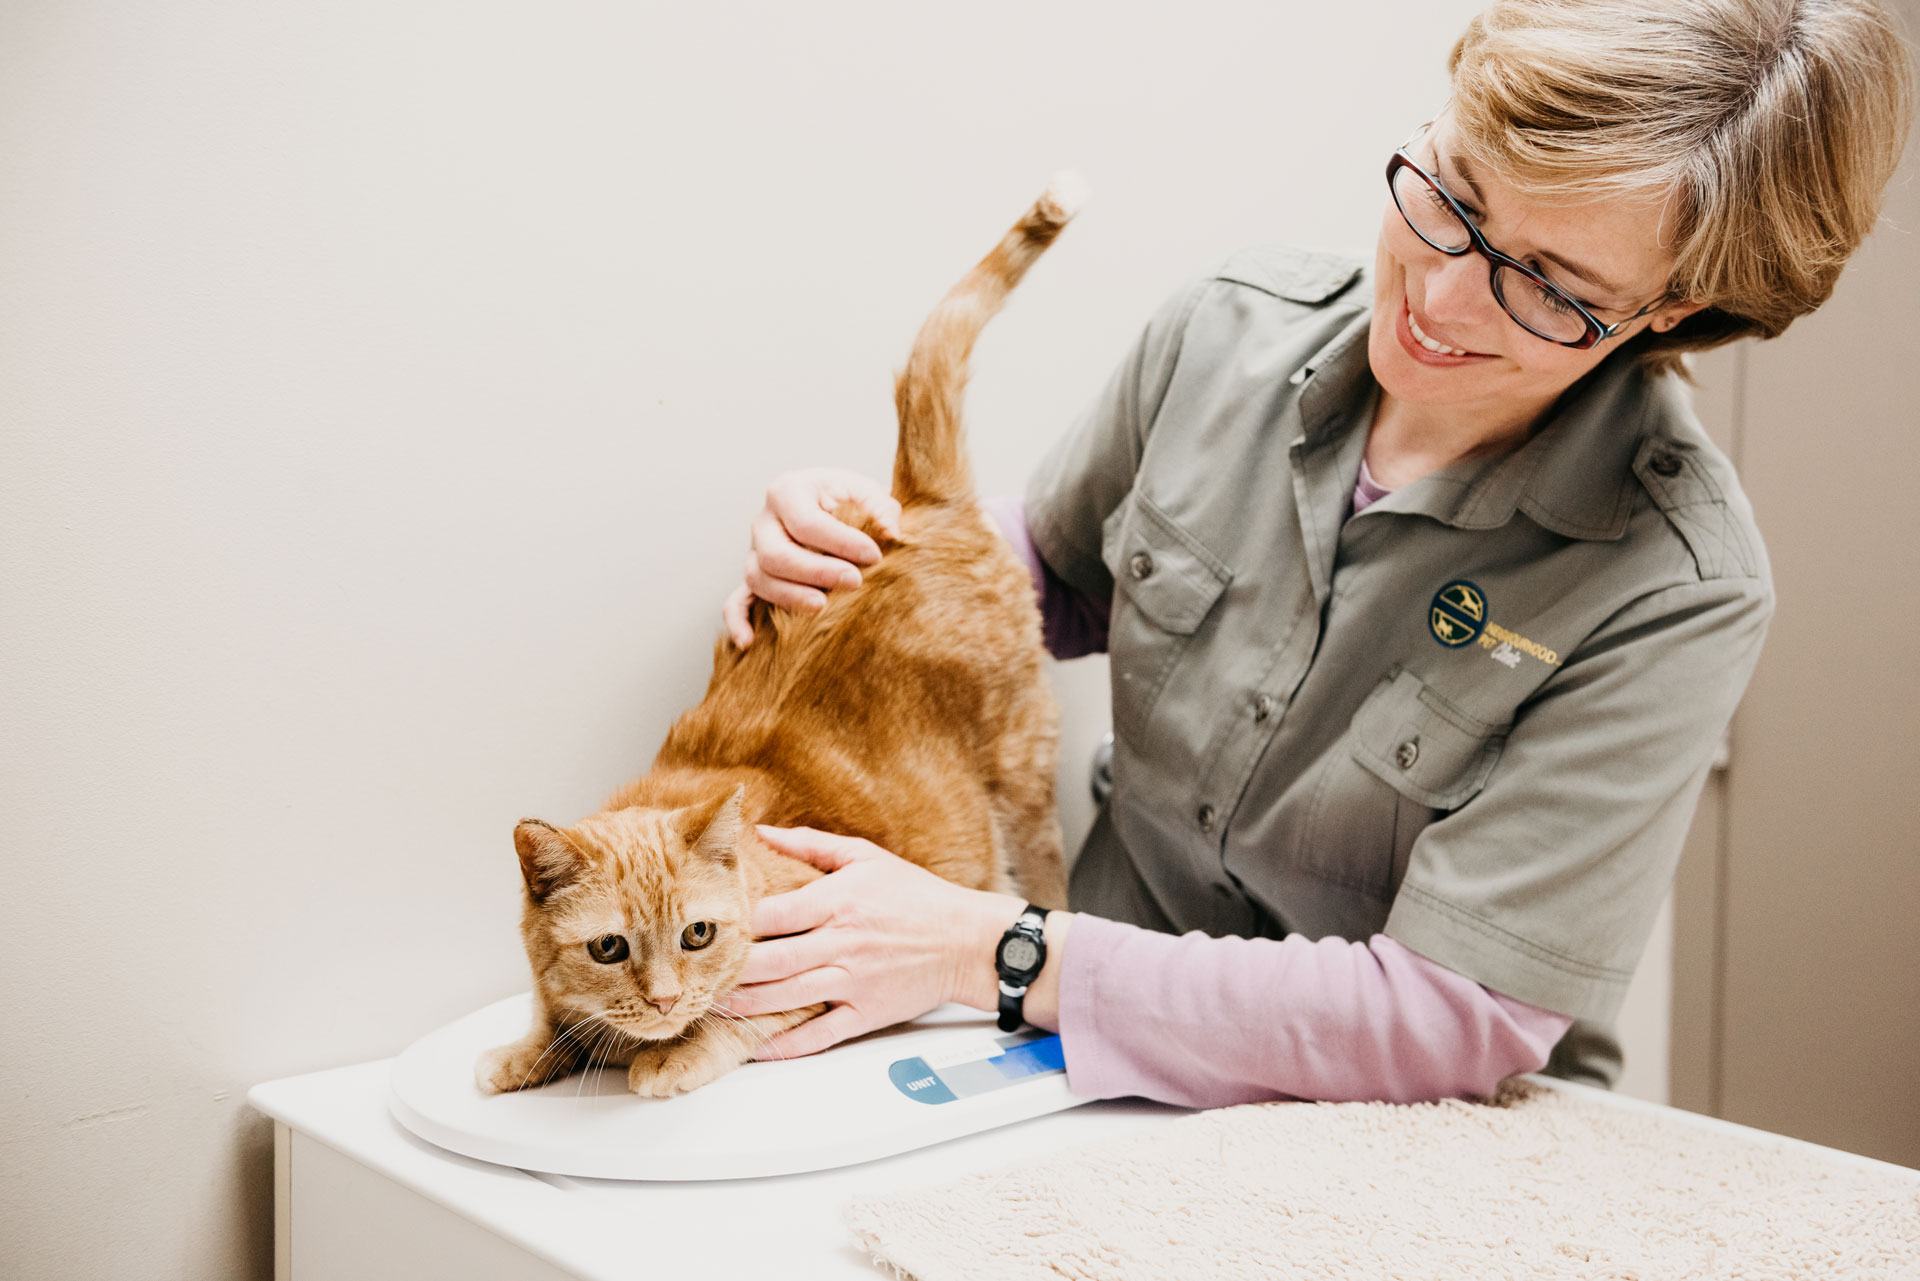 cat receiving a vet exam